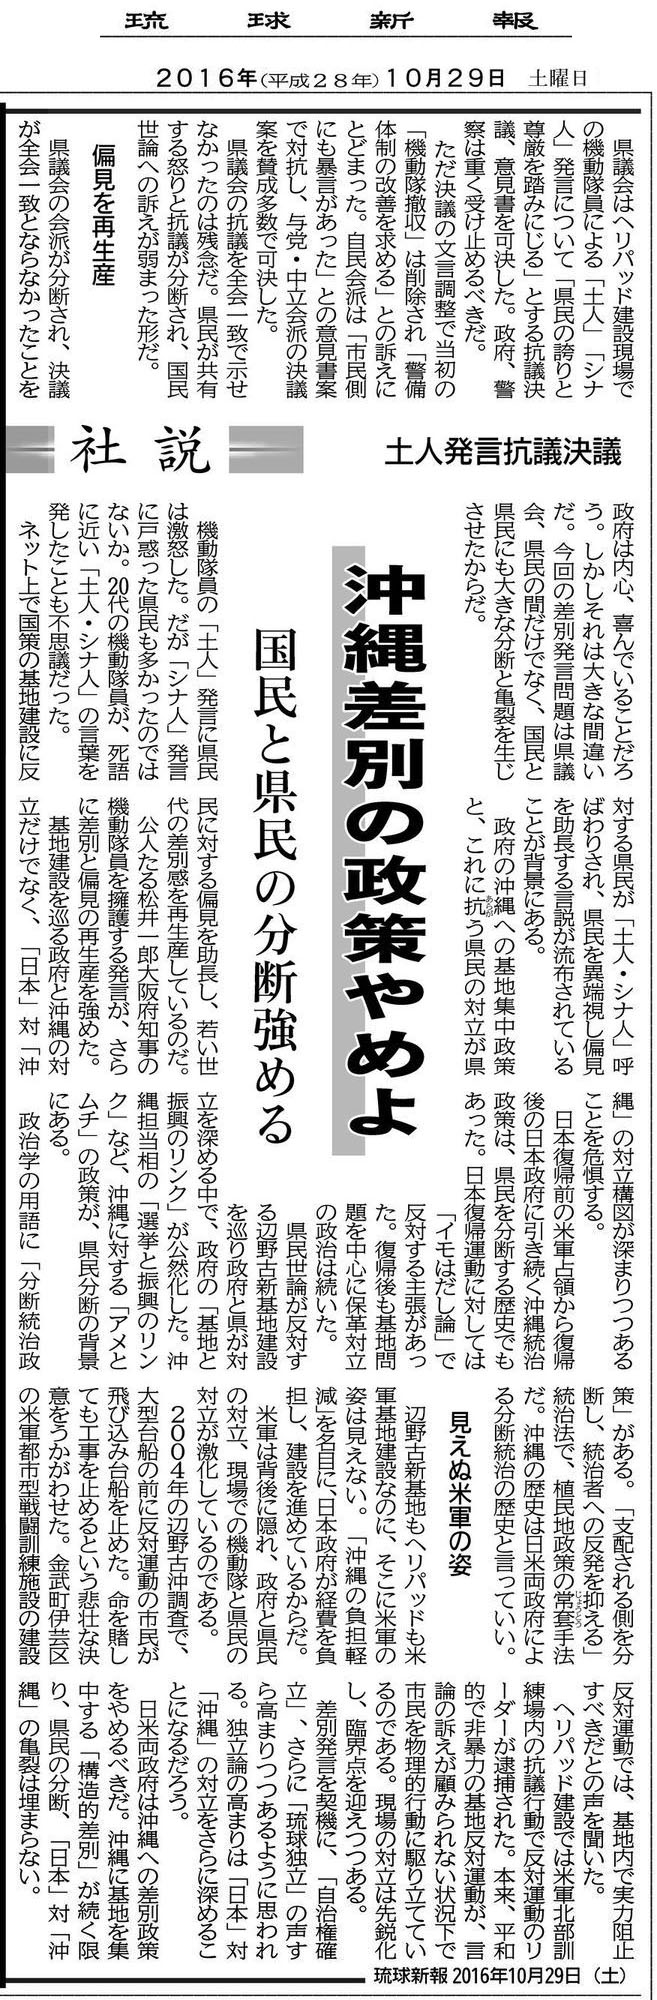 琉球新報社説、2016年10月29日